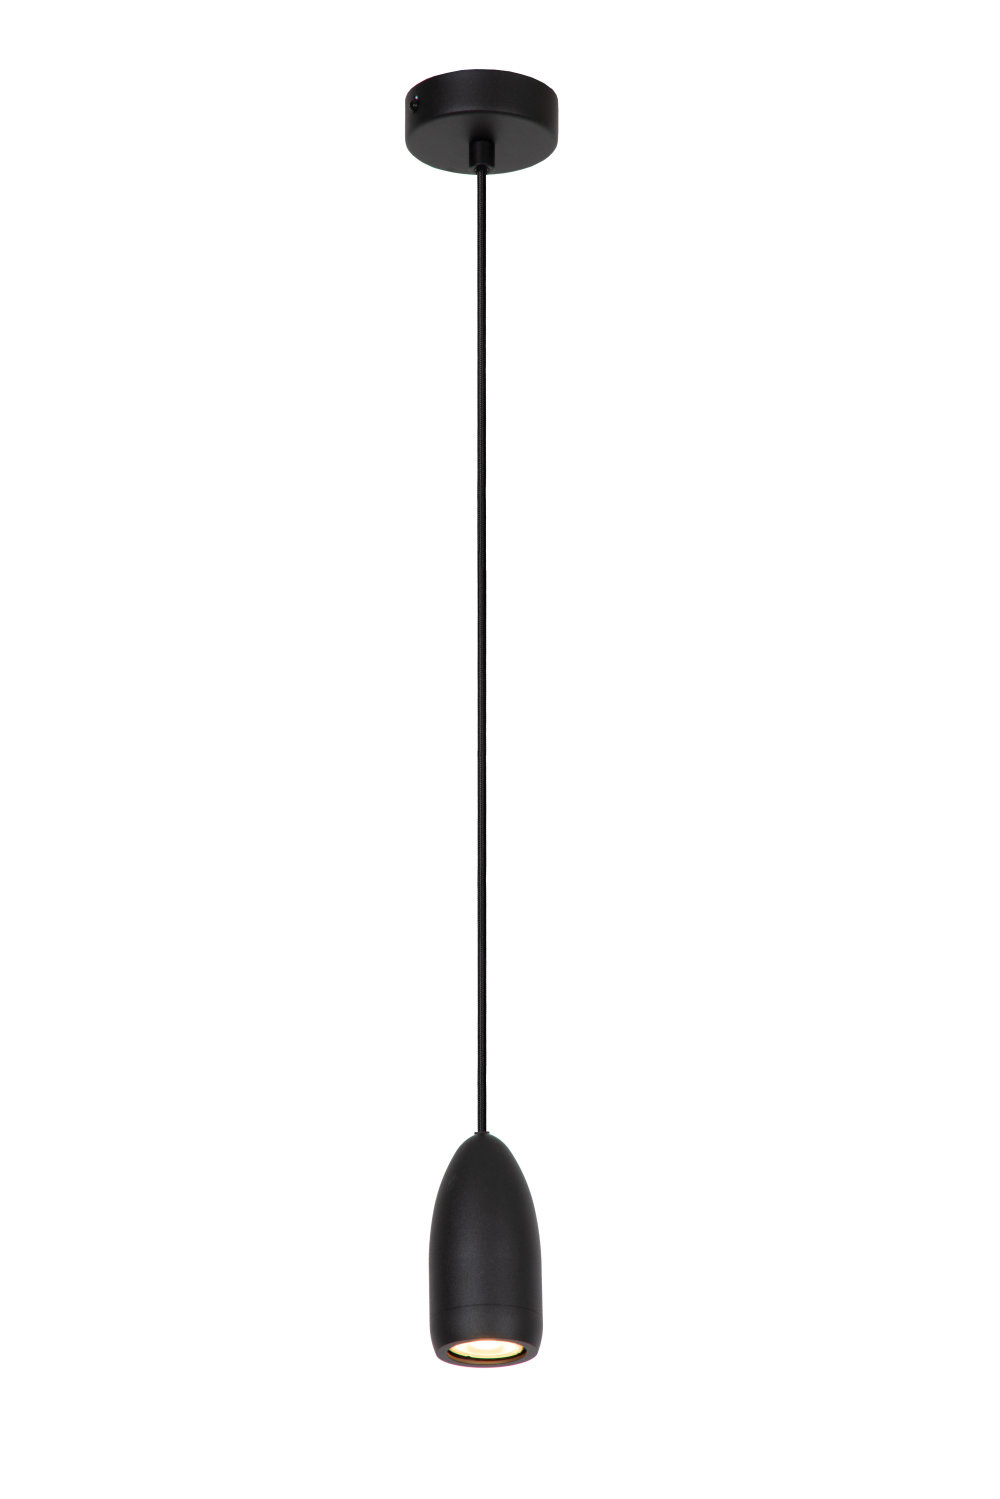 Aanbieding Lucide EVORA - Hanglamp - Ø 10 cm - 1xGU10 - Zwart - ean 5411212452504